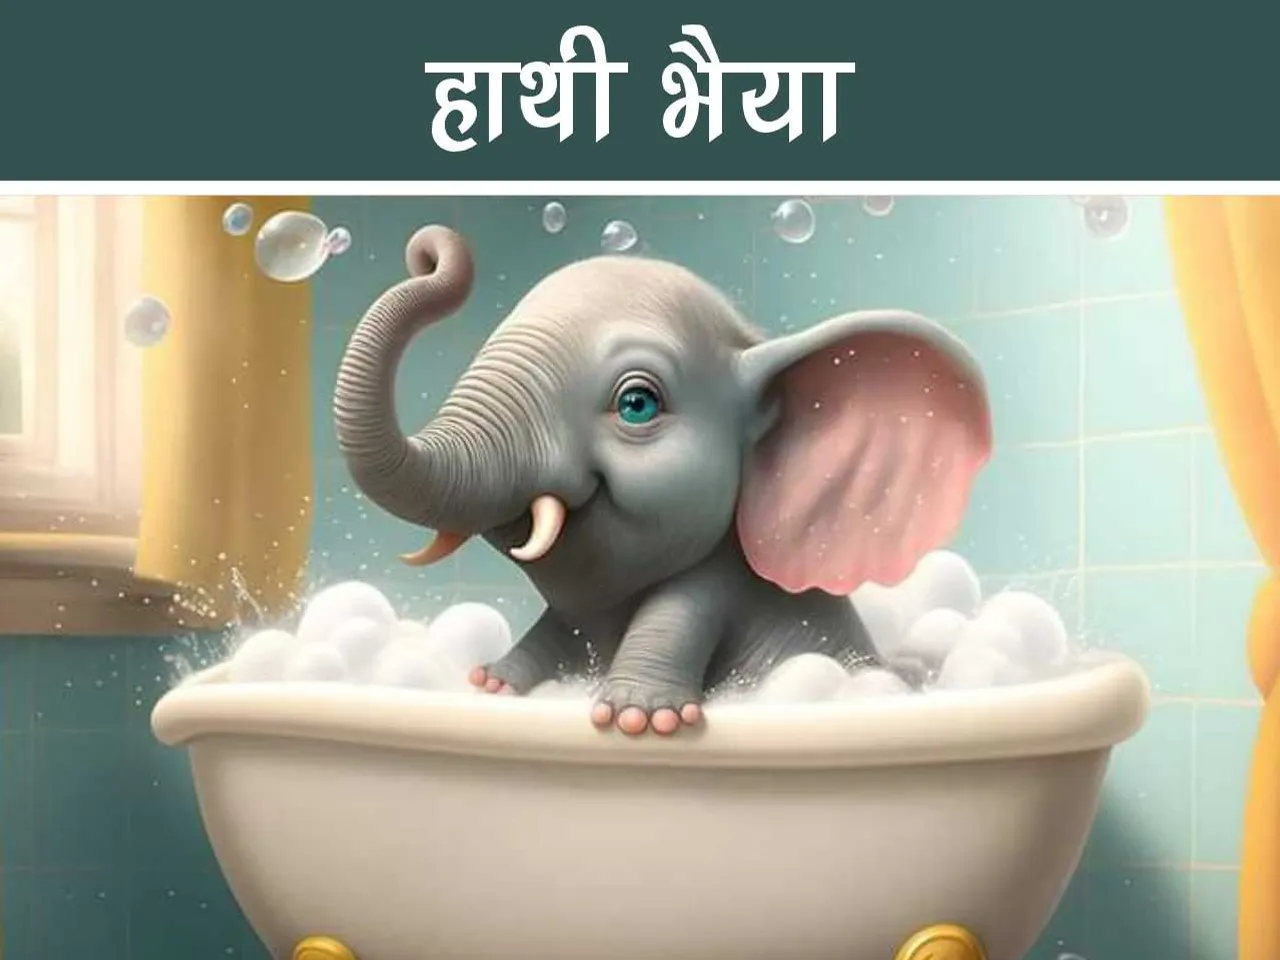 Baby Elephant in bath tub cartoon image